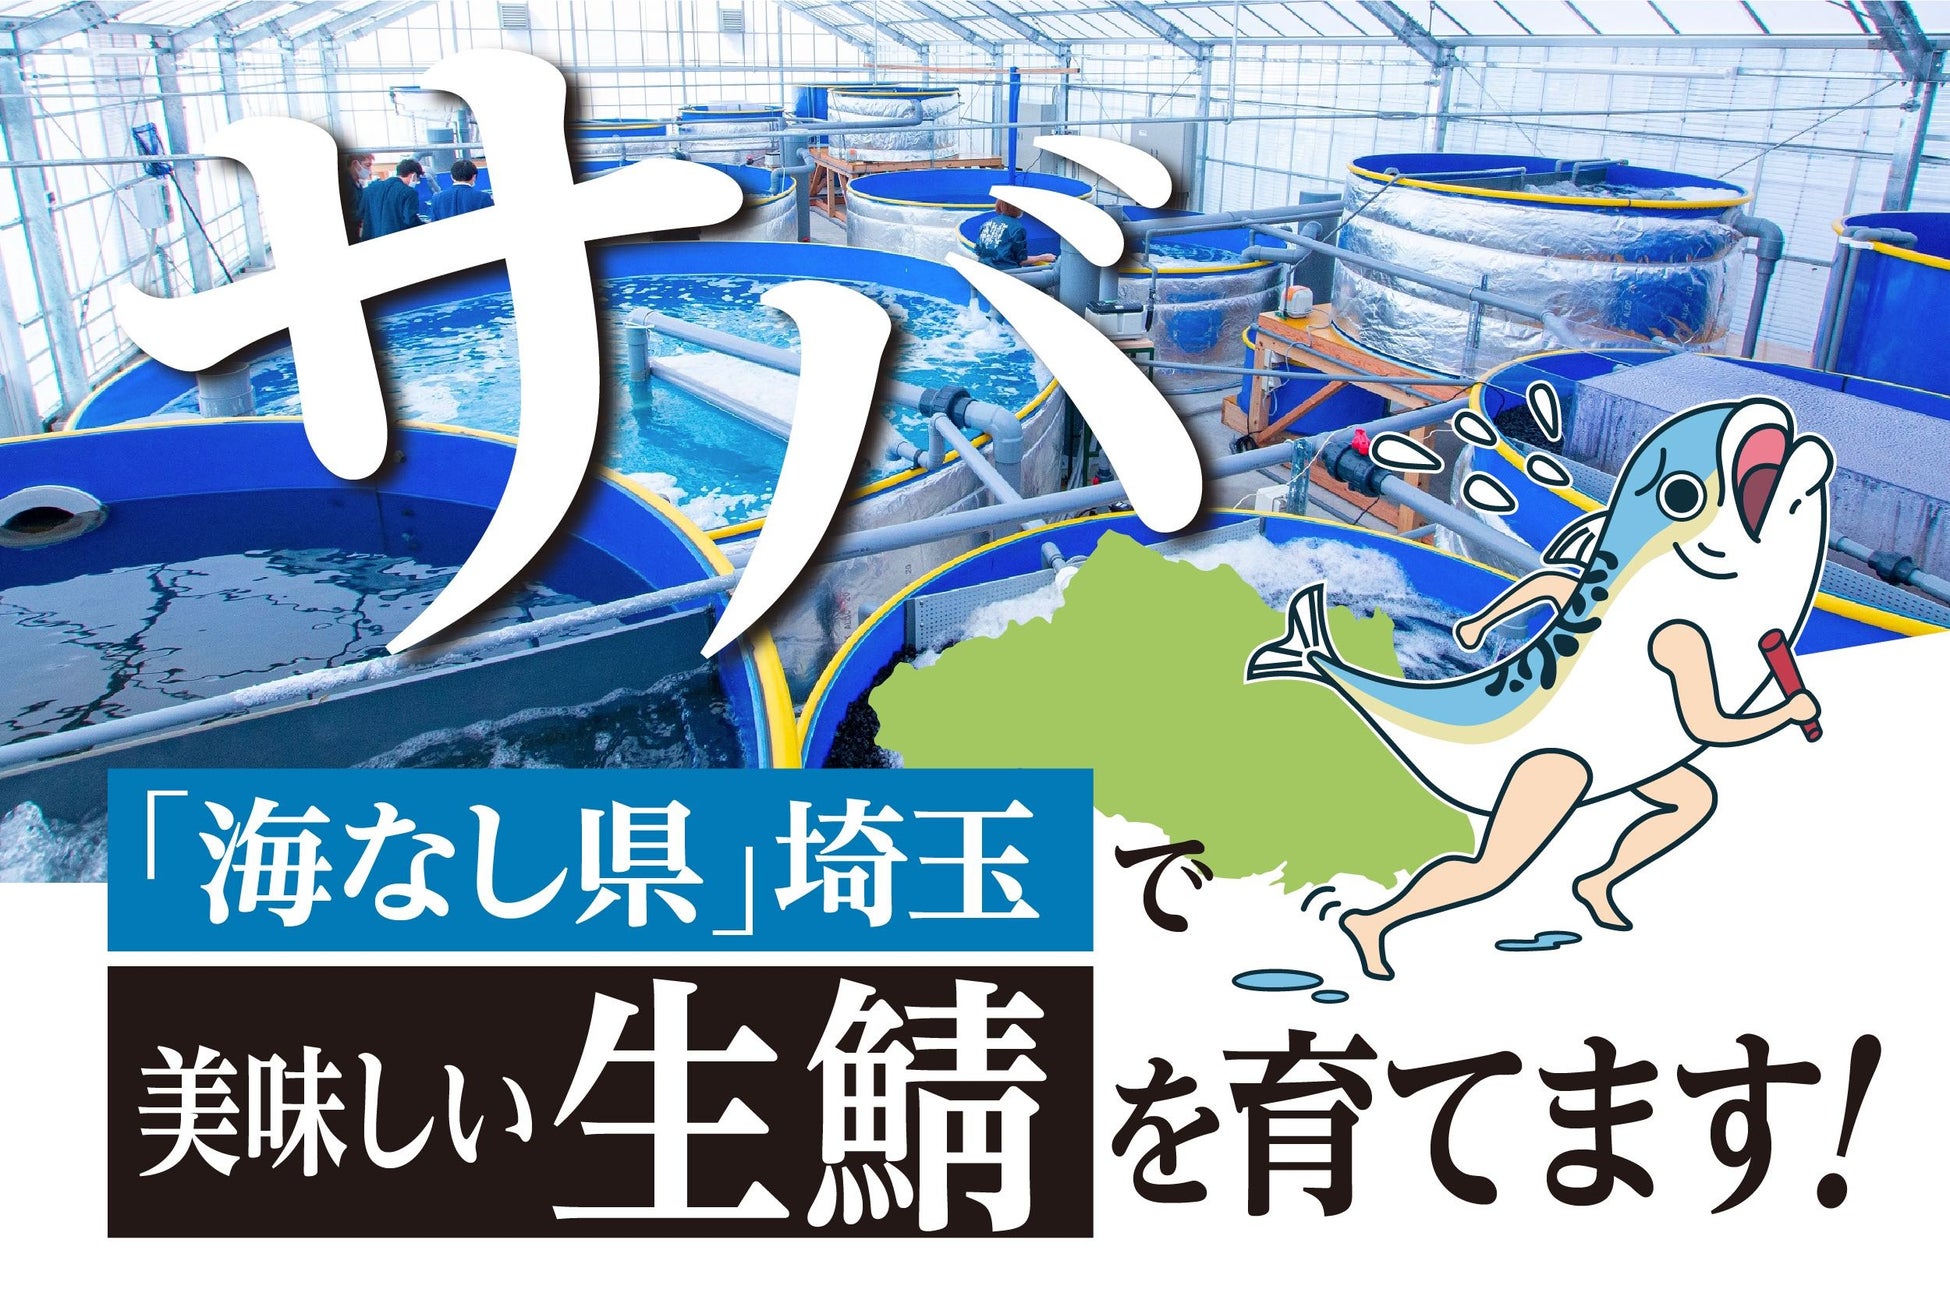 生サバを食べられる権利や、オリジナルグッズの販売も。海なし県埼玉の「温泉サバ陸上養殖場」がクラウドファンディングを実施のサブ画像1